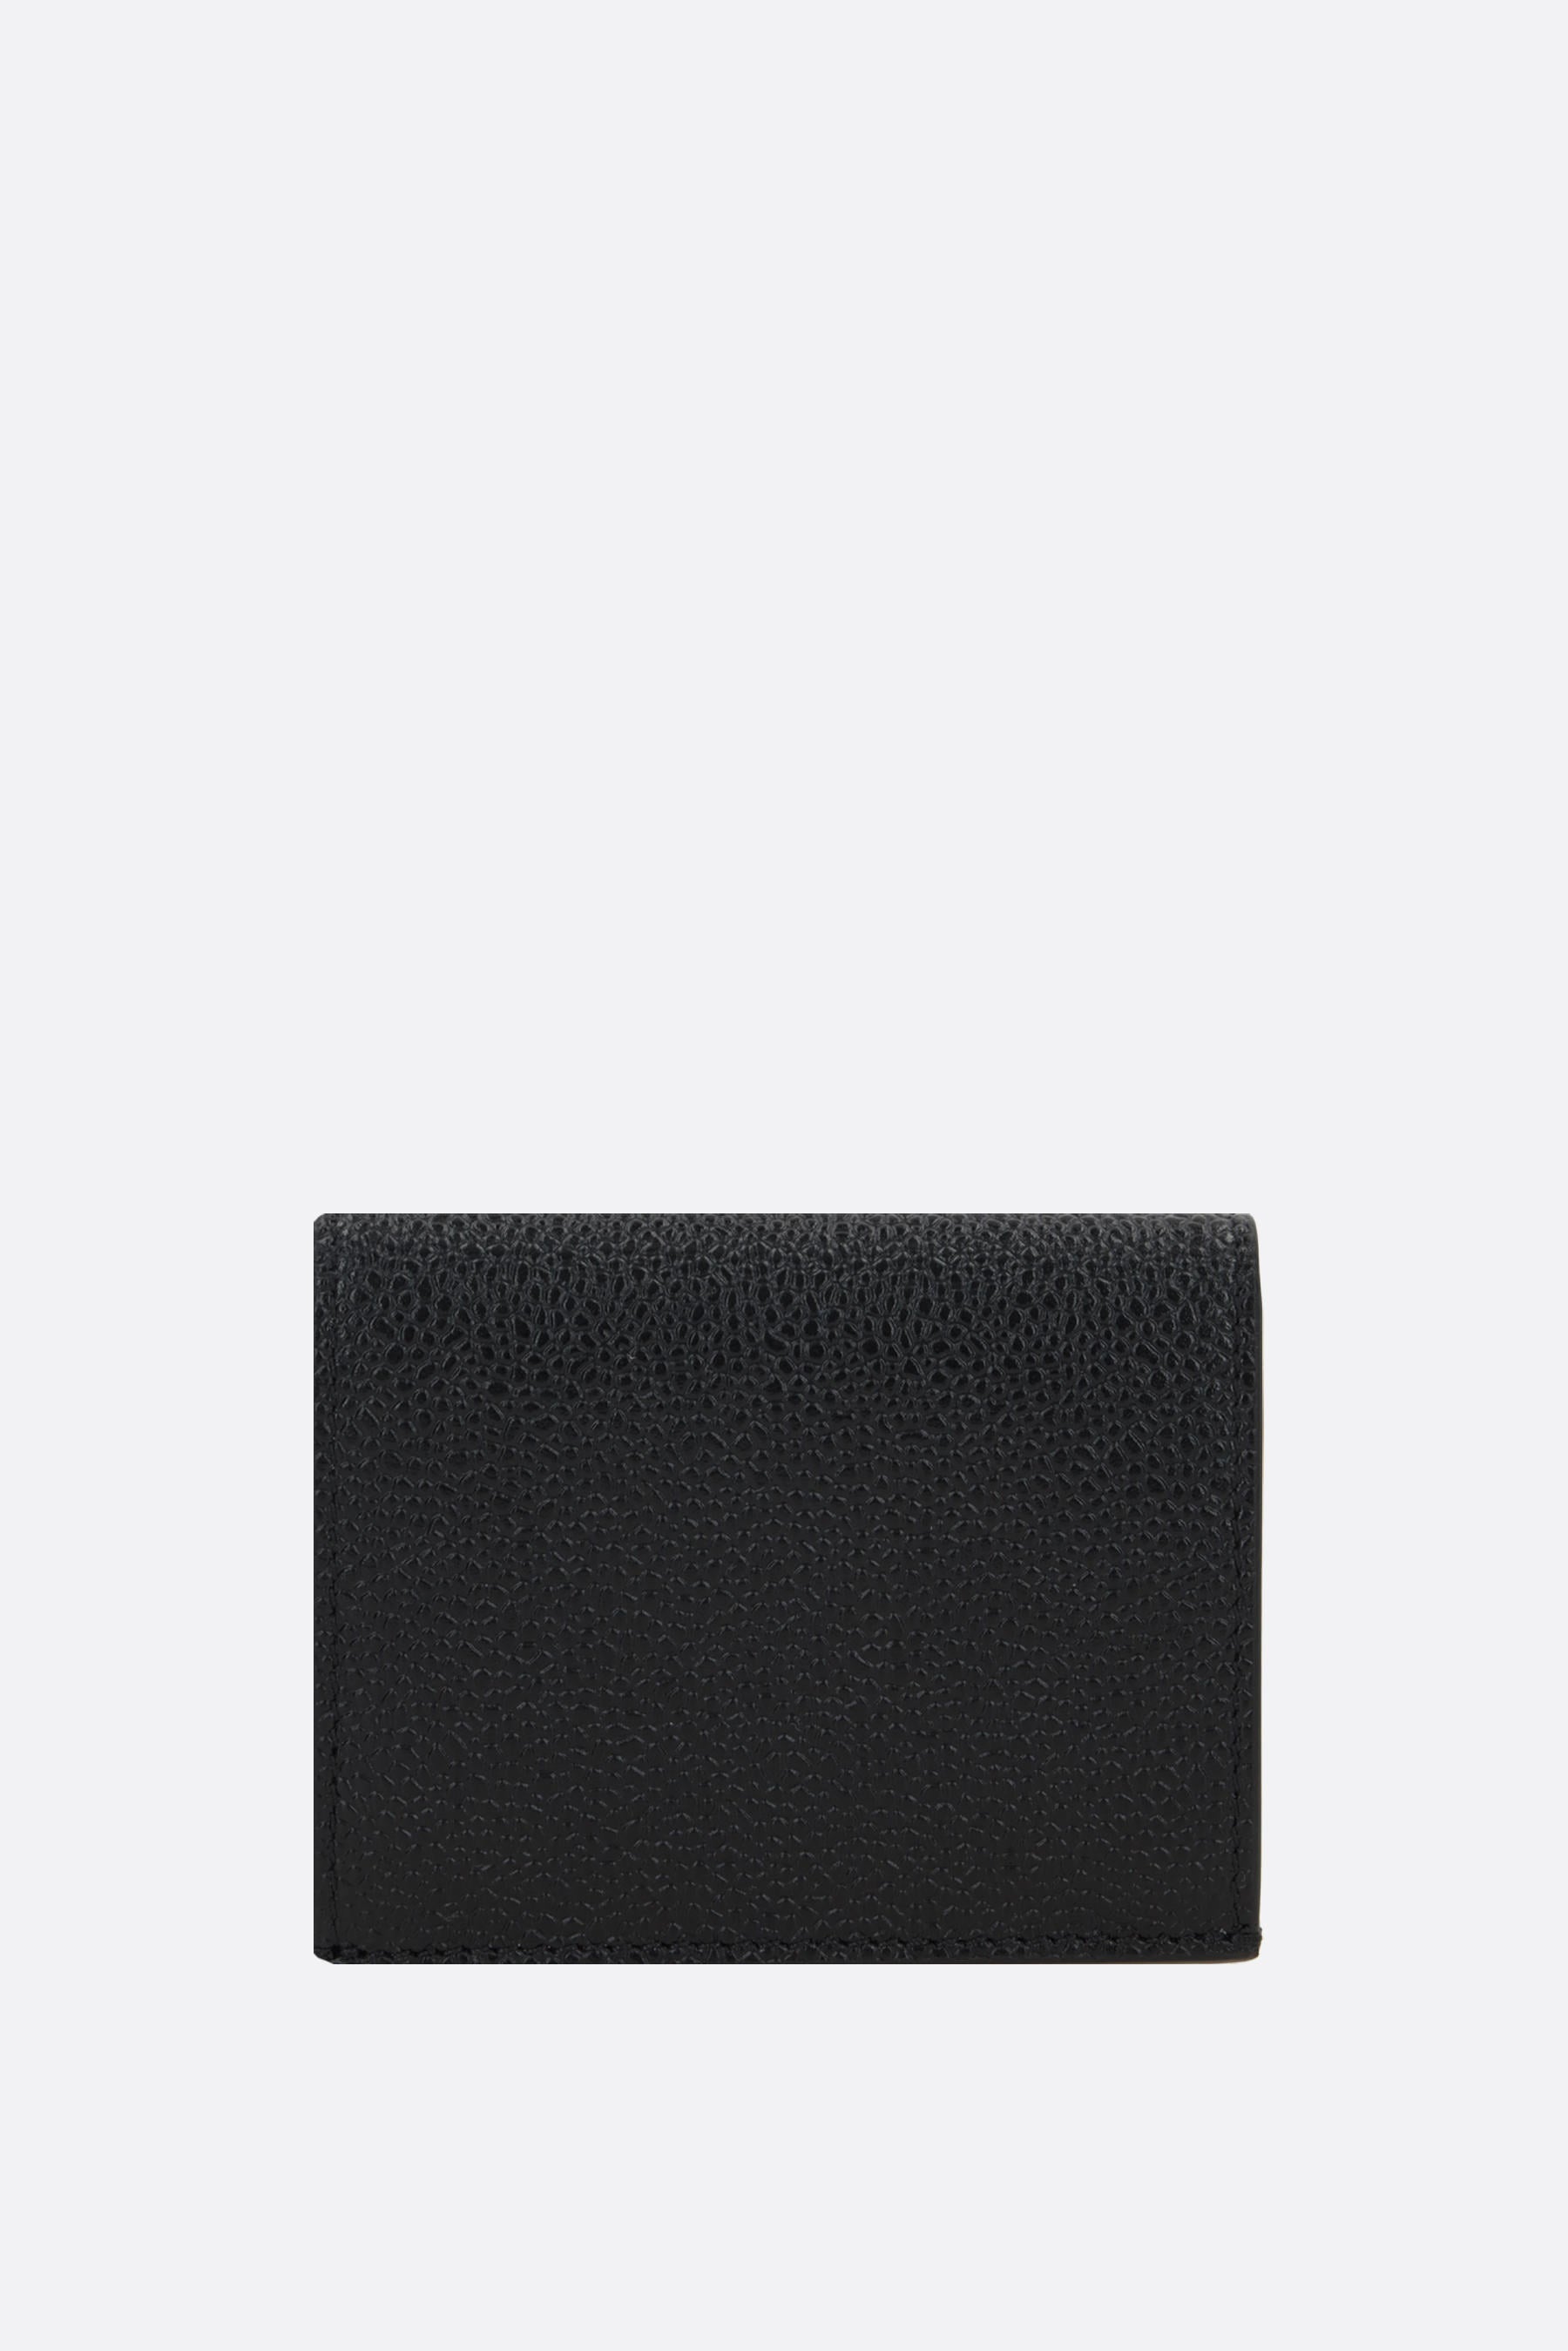 Pebble Grain leather double card case